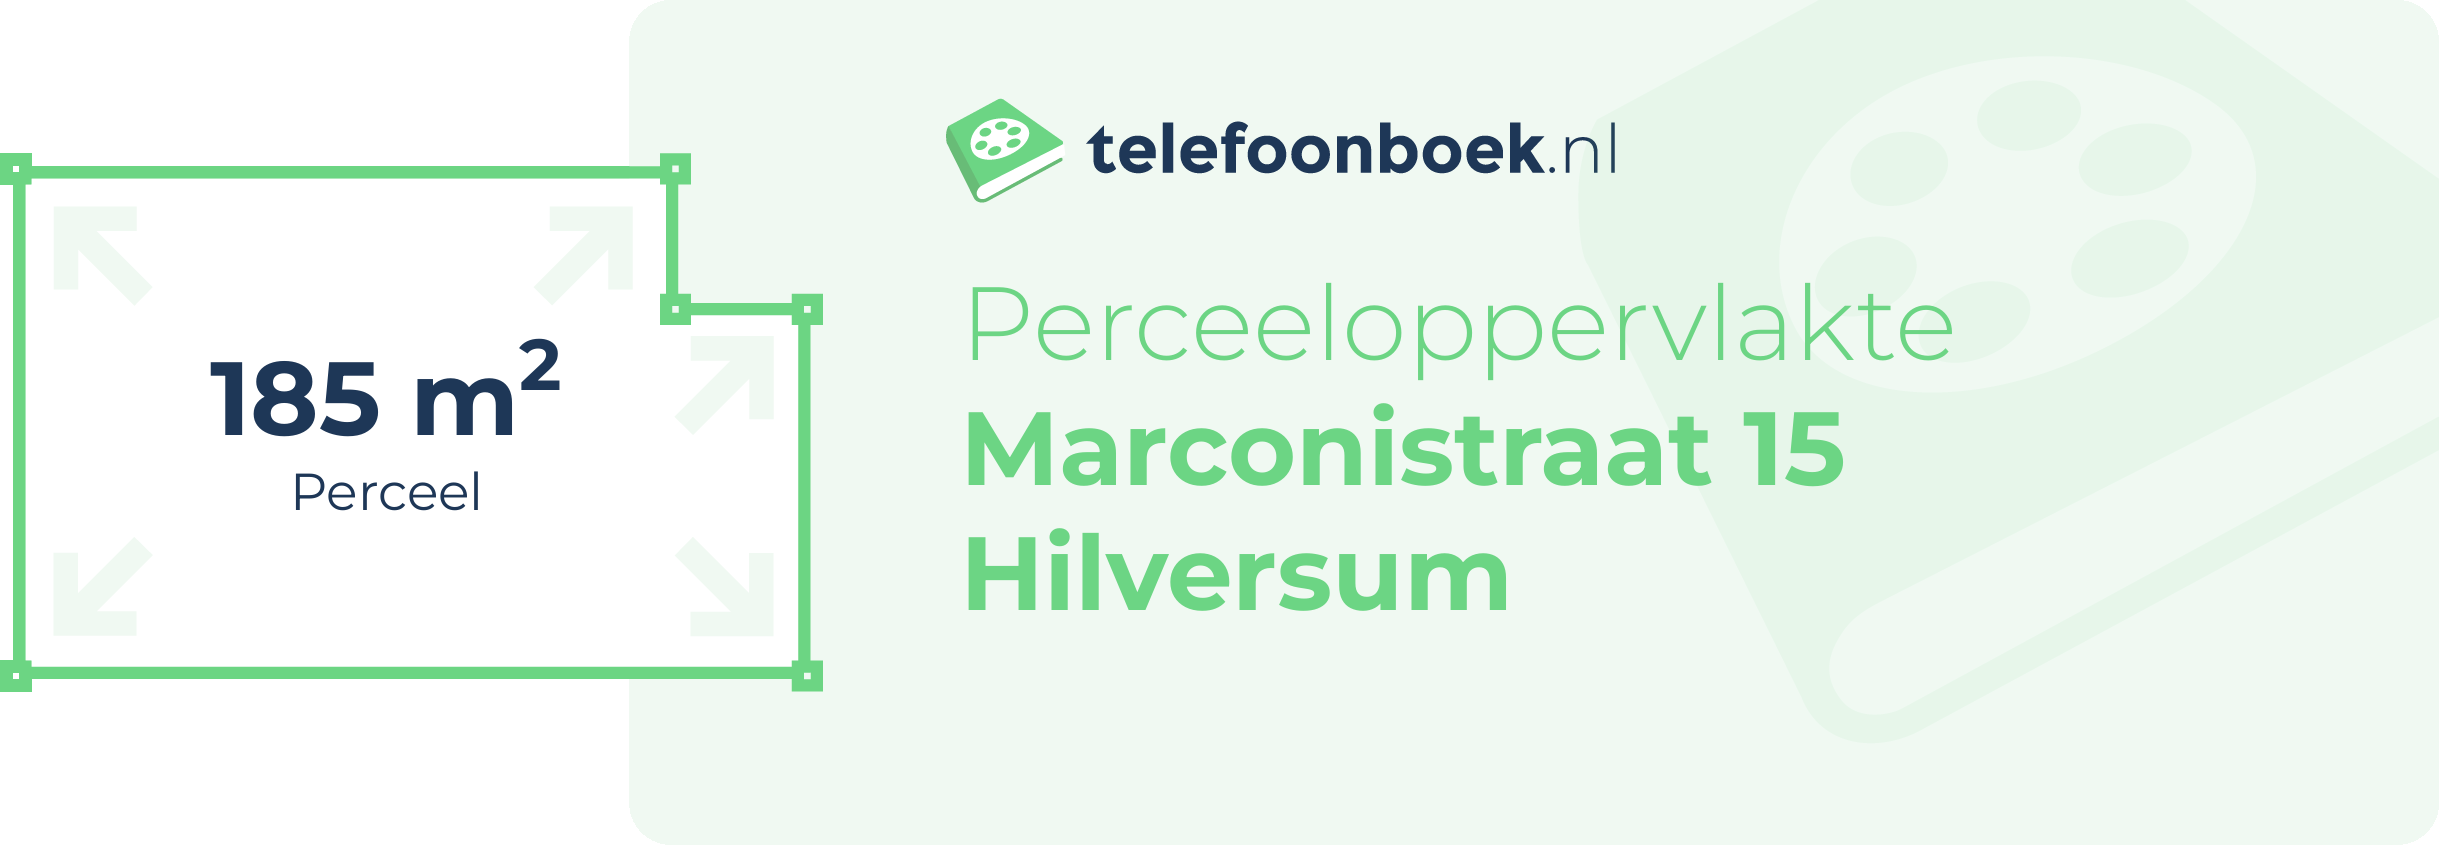 Perceeloppervlakte Marconistraat 15 Hilversum